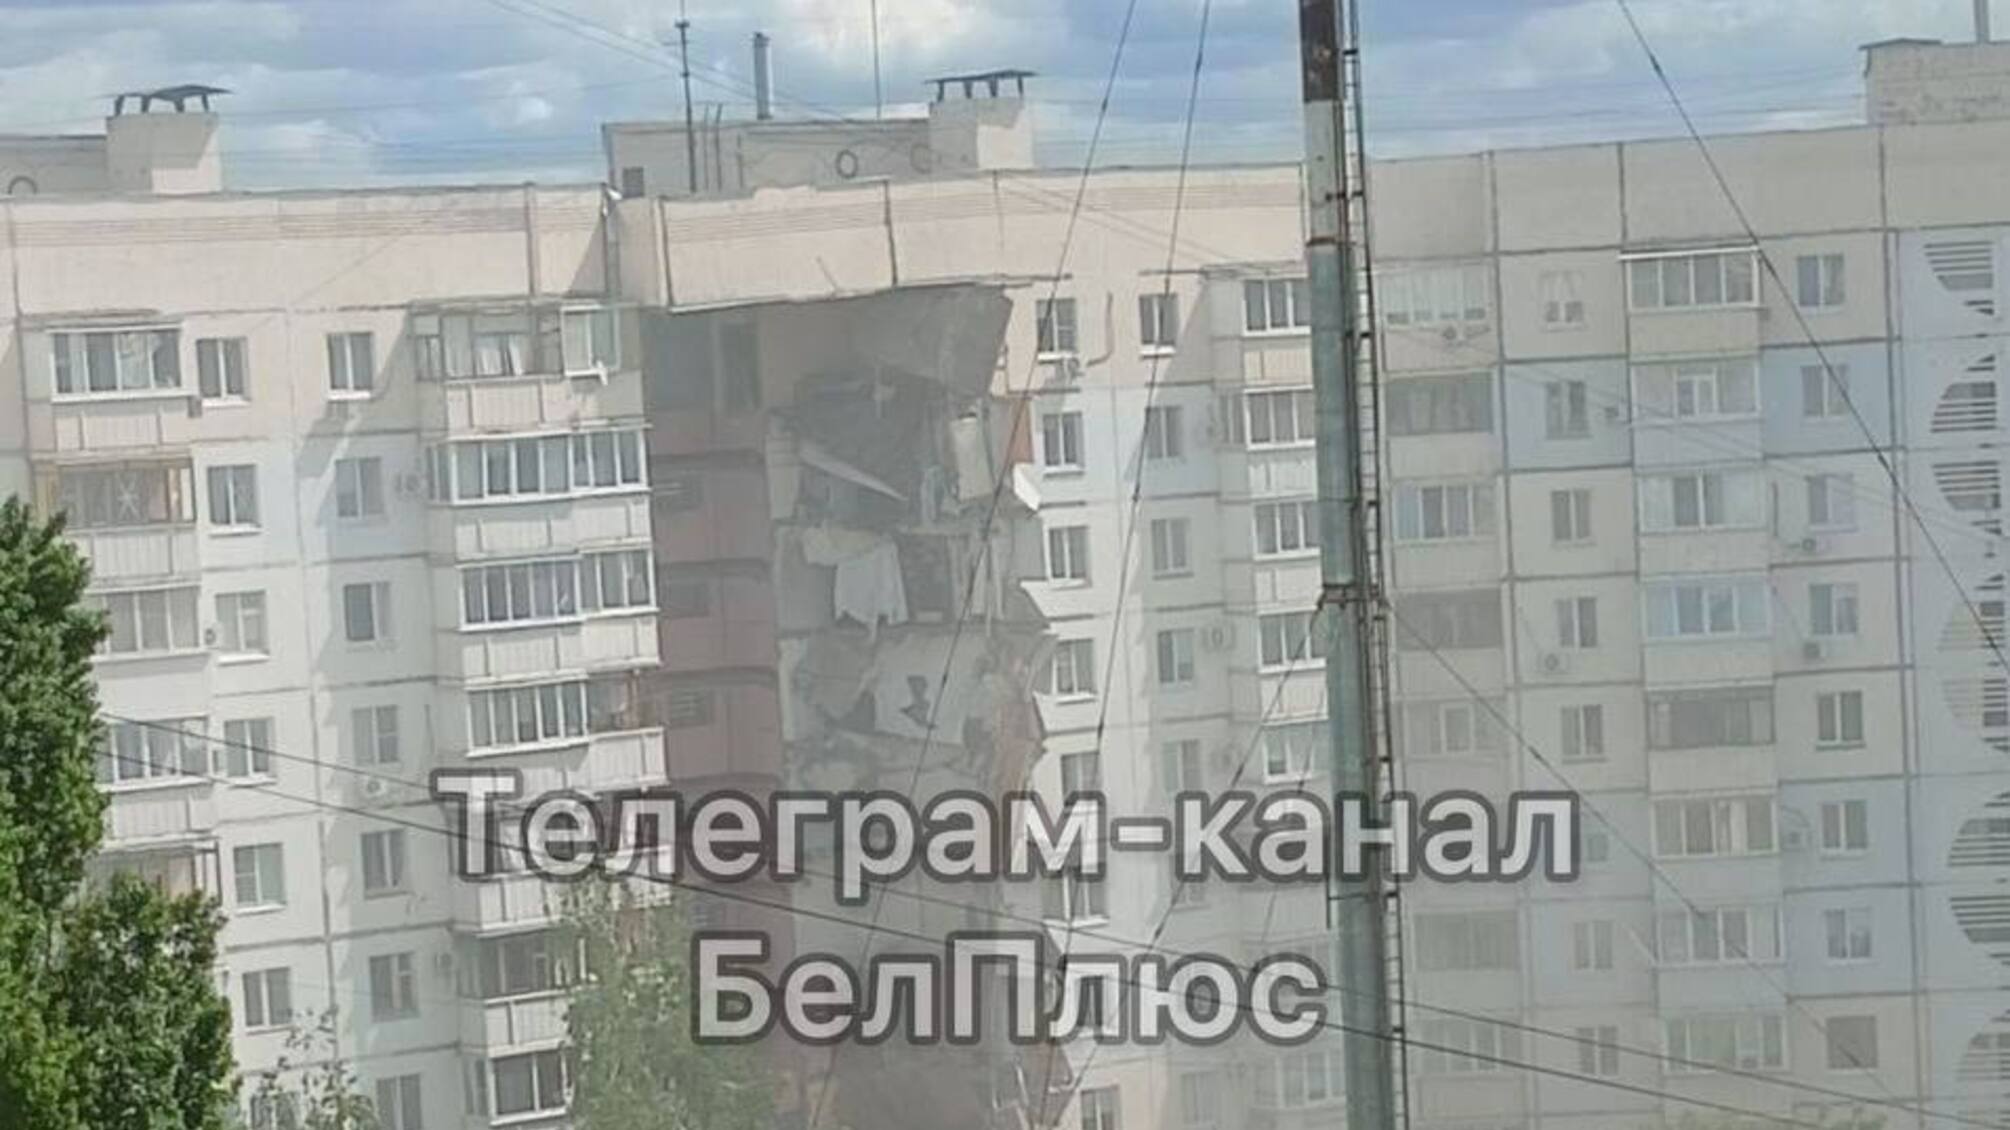 В Белгороде обрушился подъезд многоэтажки, есть погибшие и пострадавшие: власть России обвиняет в этом Украину (фото, видео)